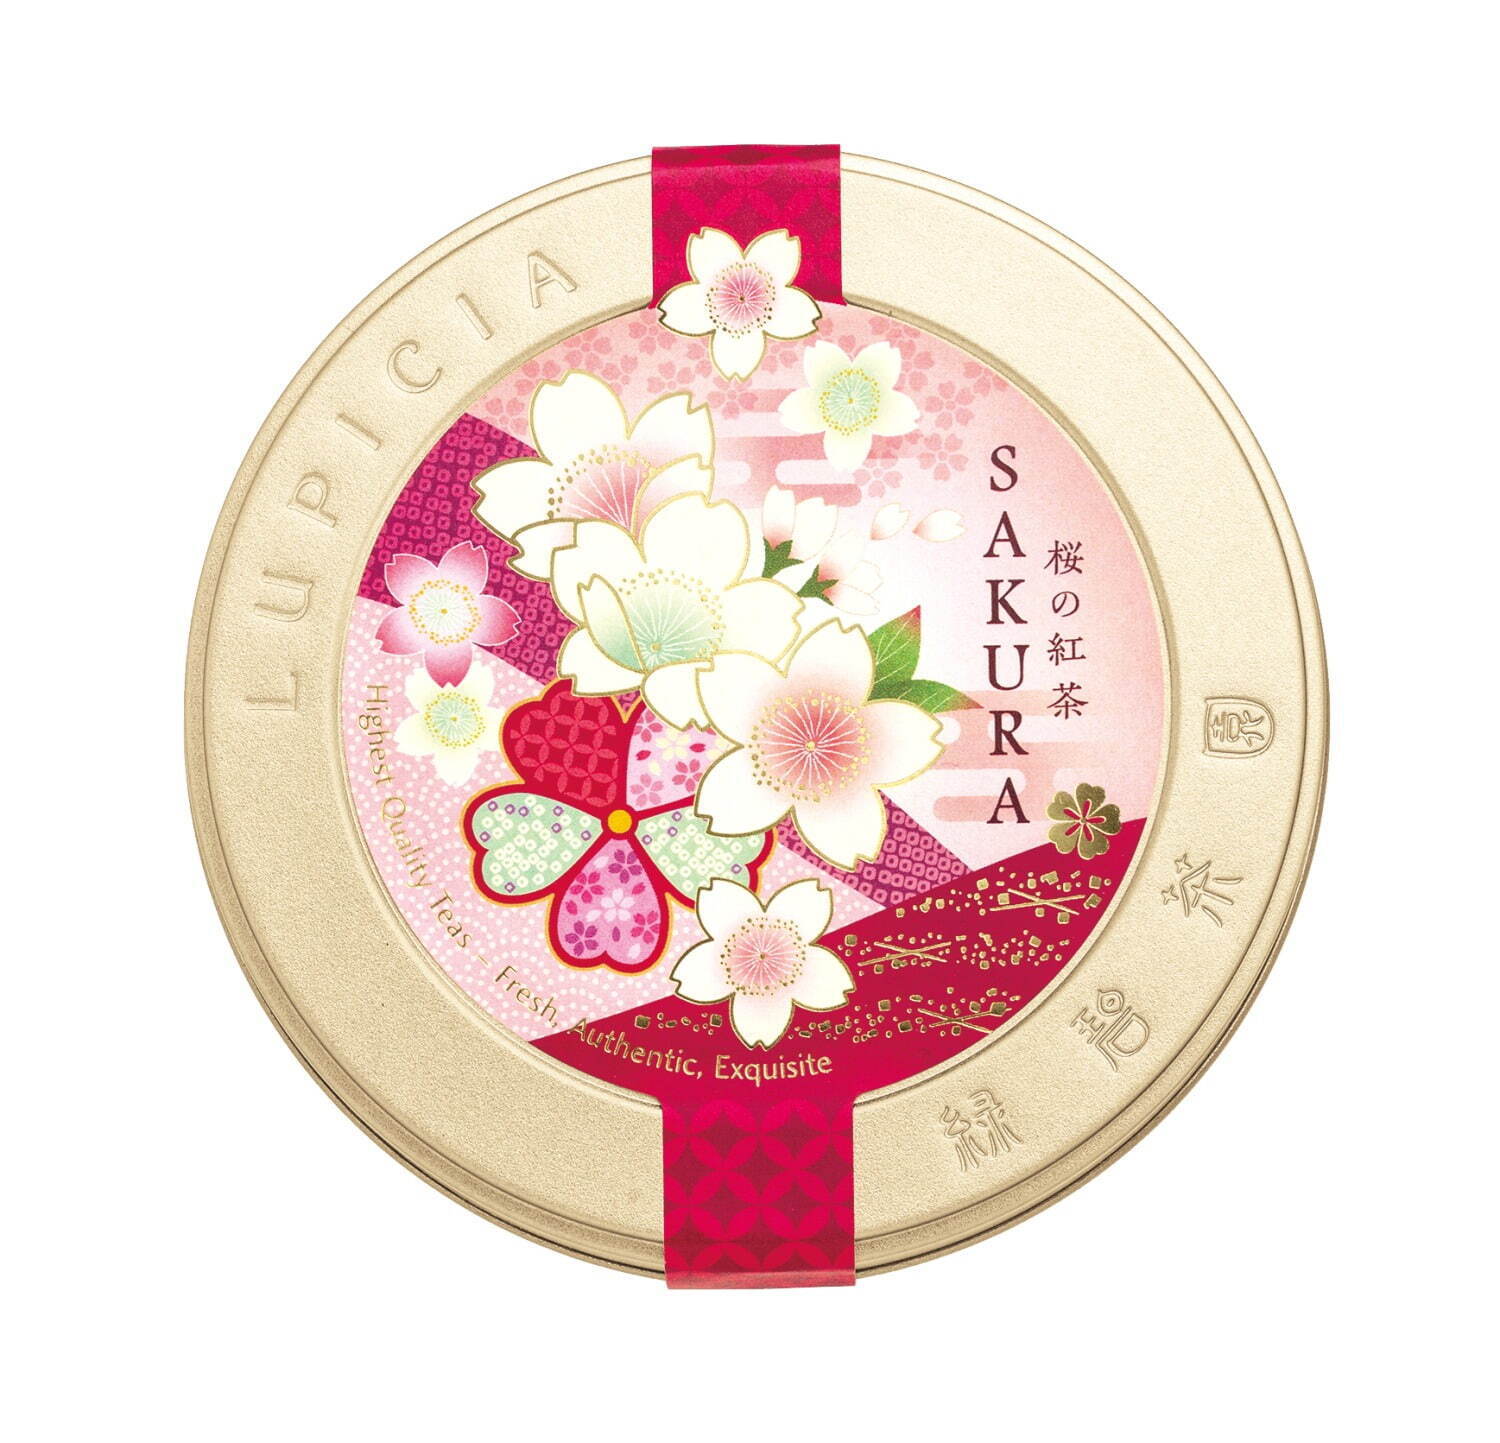 ルピシア 桜のお茶 に 花鳥風月 がテーマの紅茶缶 ほんのり塩味の桜餅や桜の葉 苺のフレーバー ファッションプレス